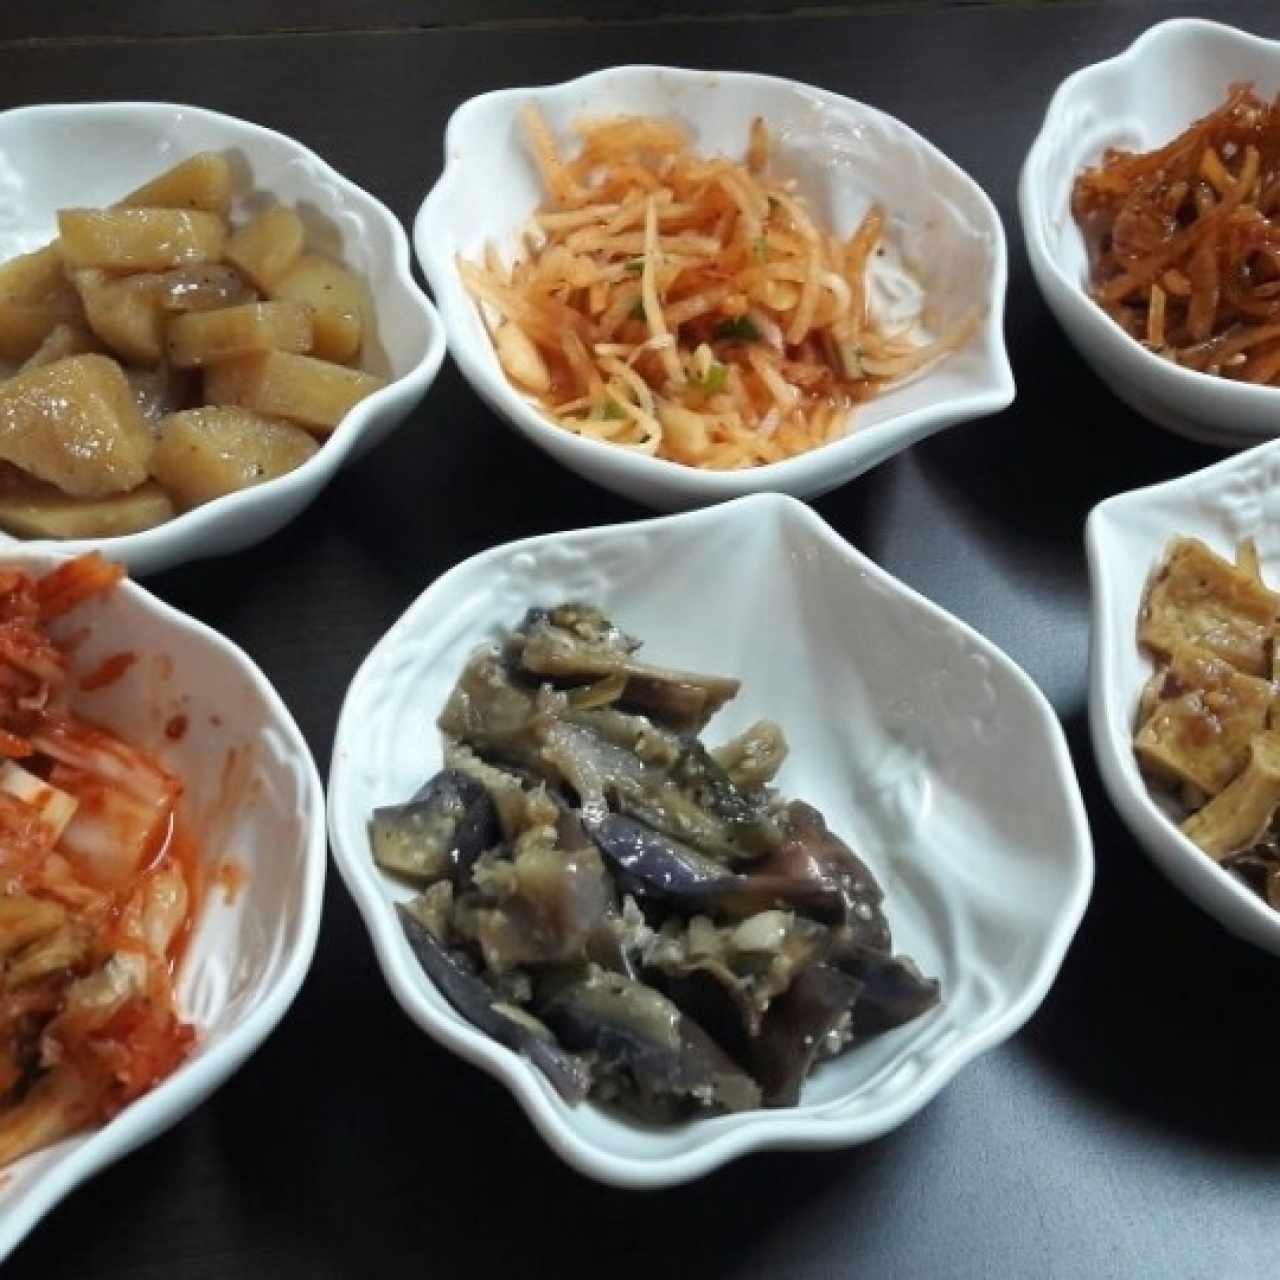 Kimchi, berenjenas, pescado, papas, rabanos y calamar dulce.